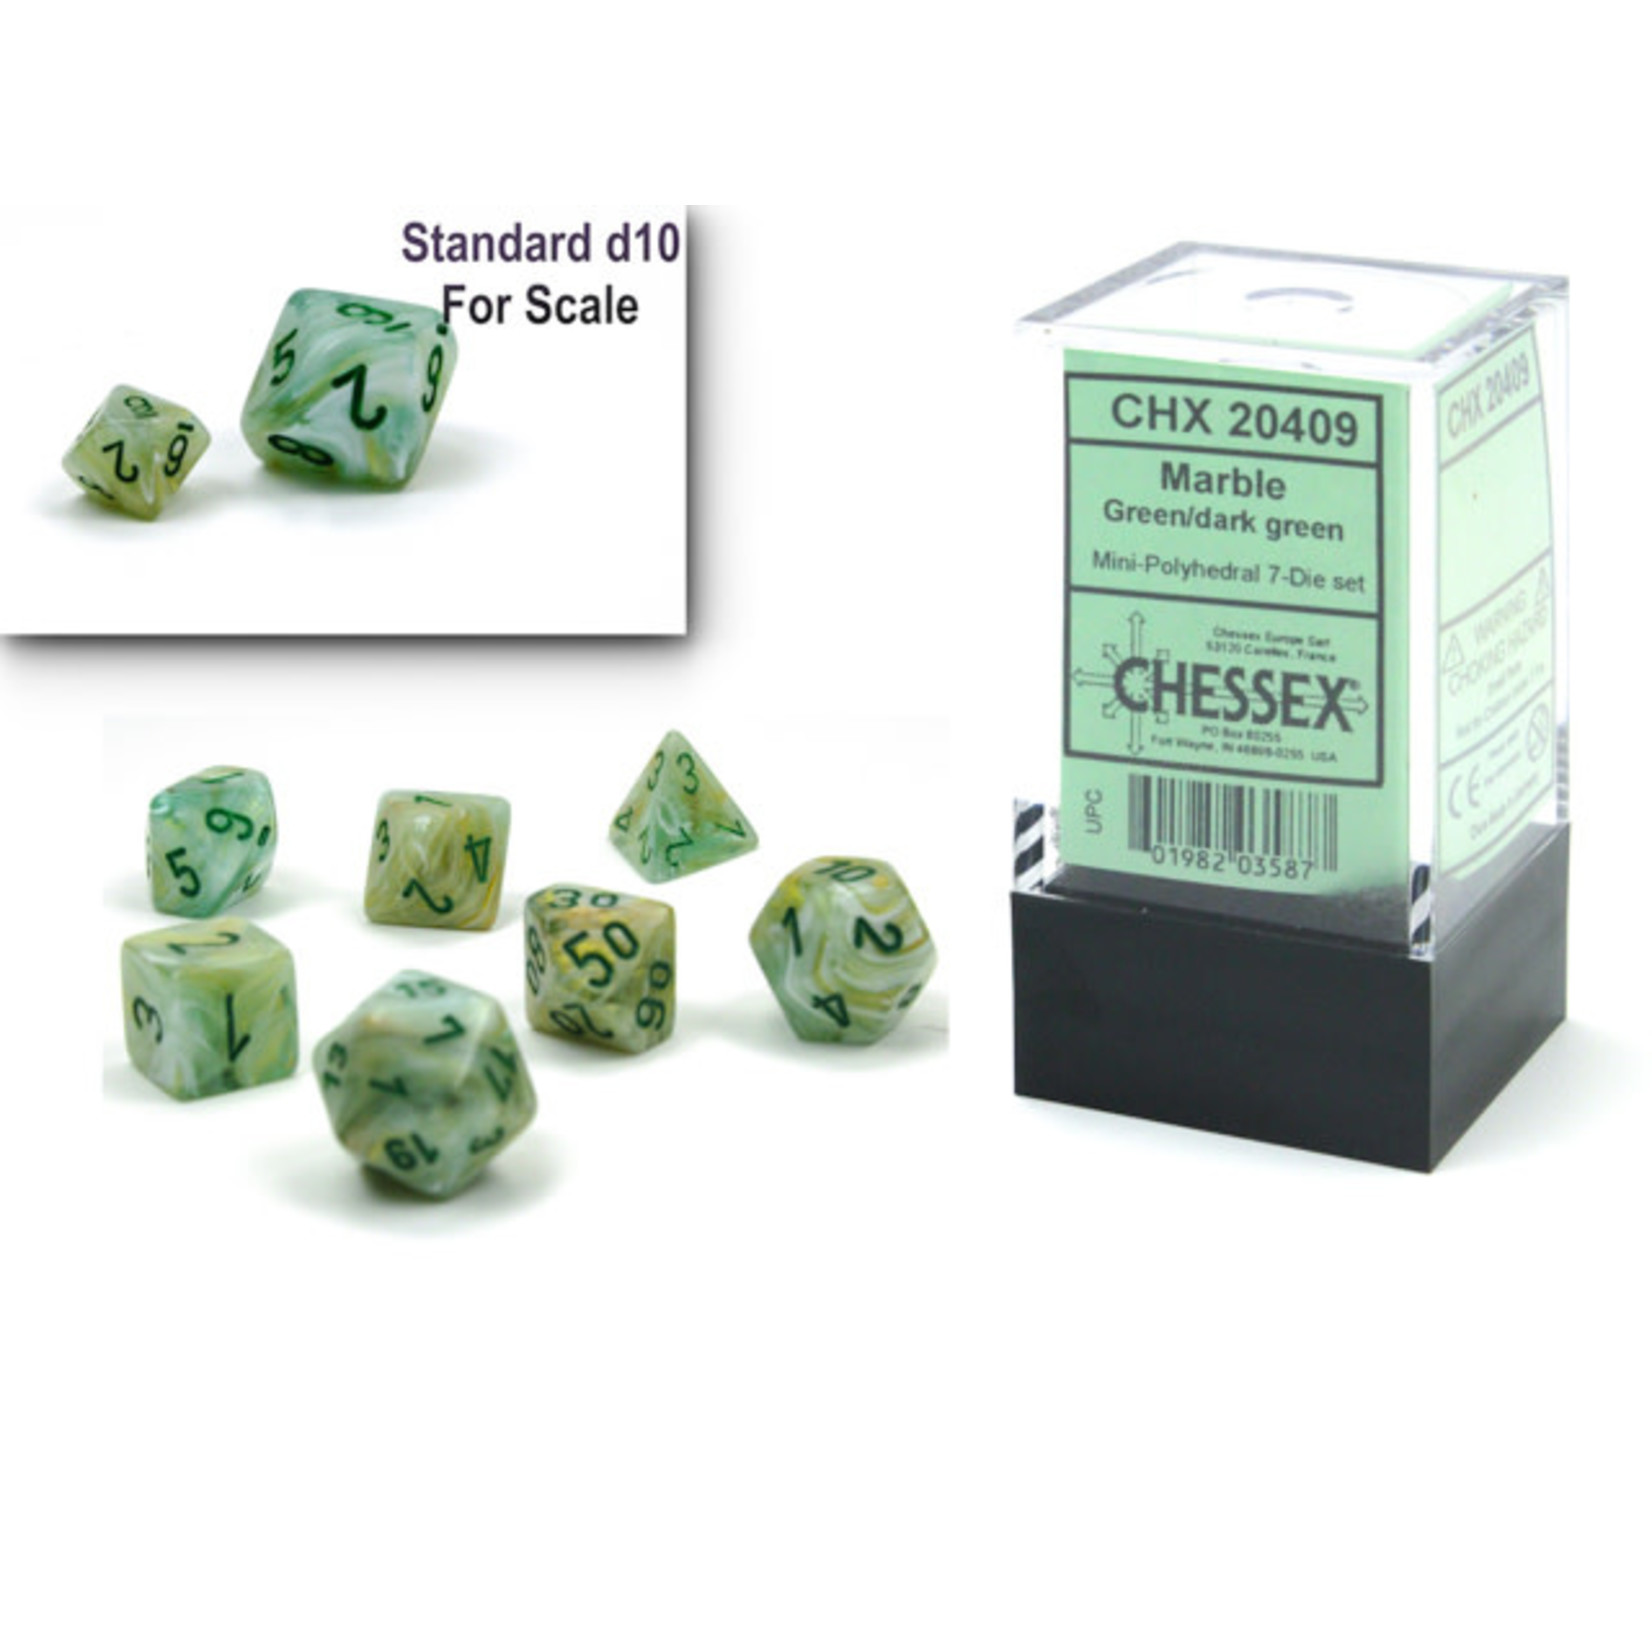 Chessex Marble Mini Green/Dark Green 7-Die Set